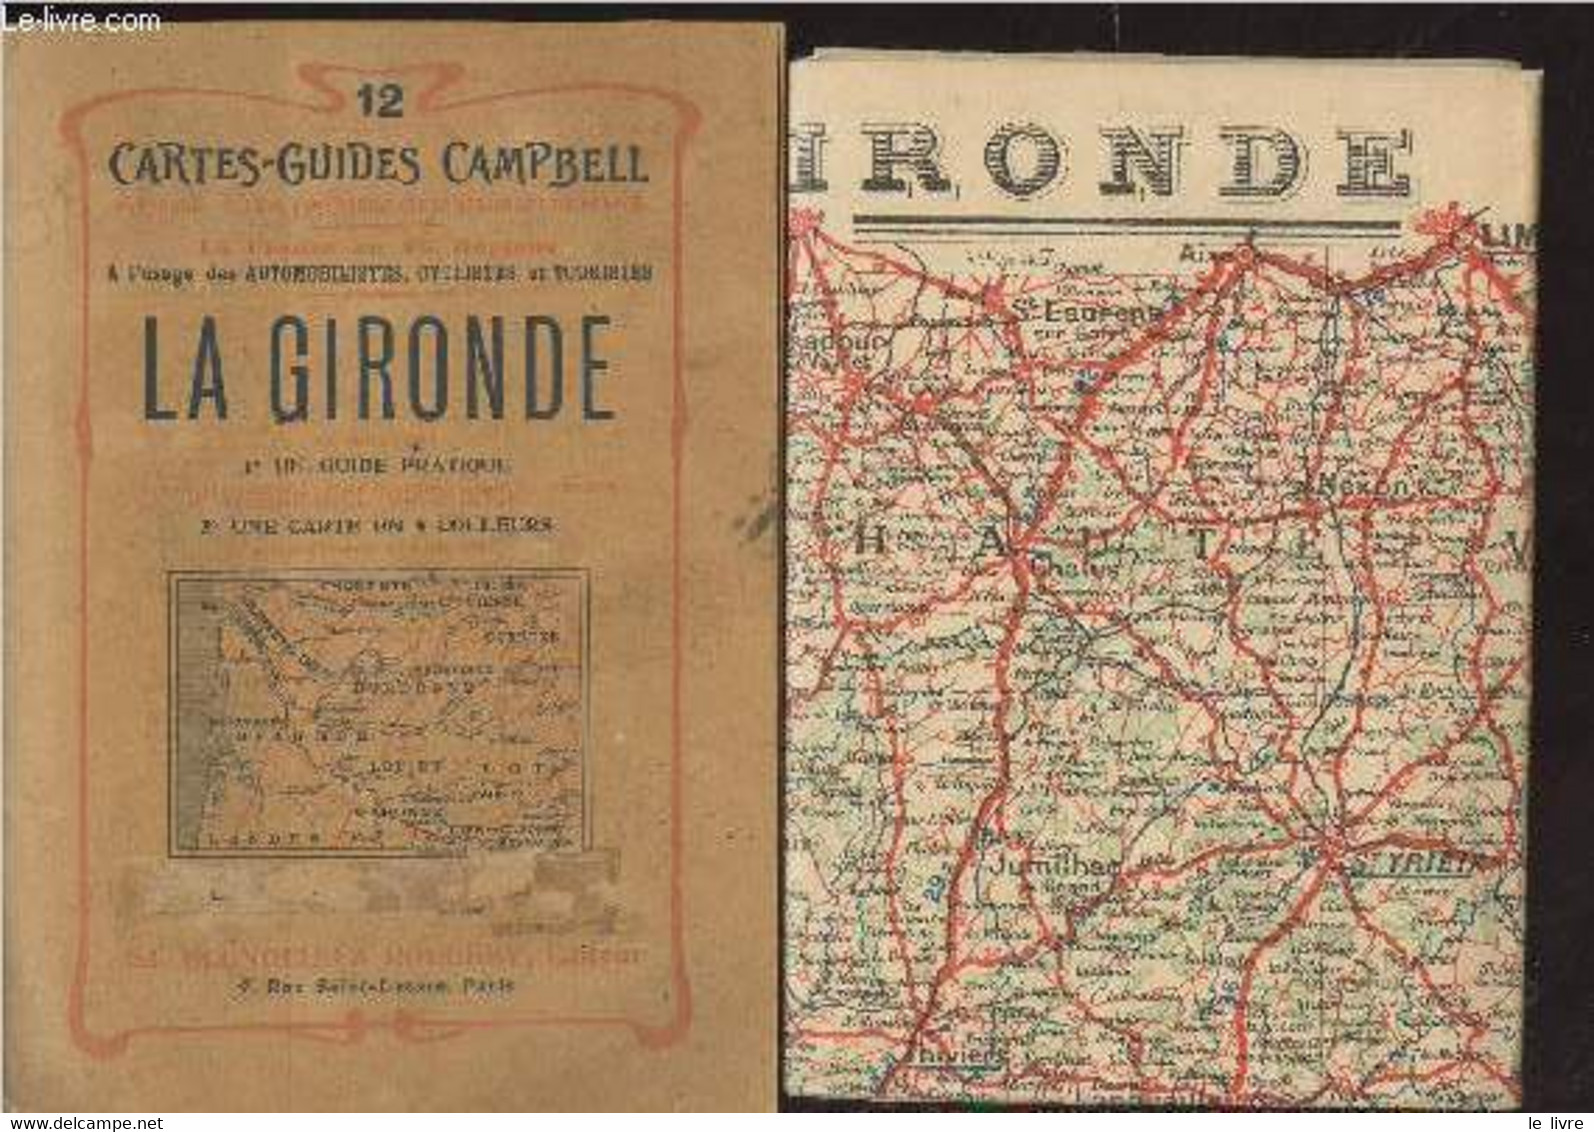 Cartes-Guides Campbelle N°12 : La Gironde - Collectif - 0 - Karten/Atlanten